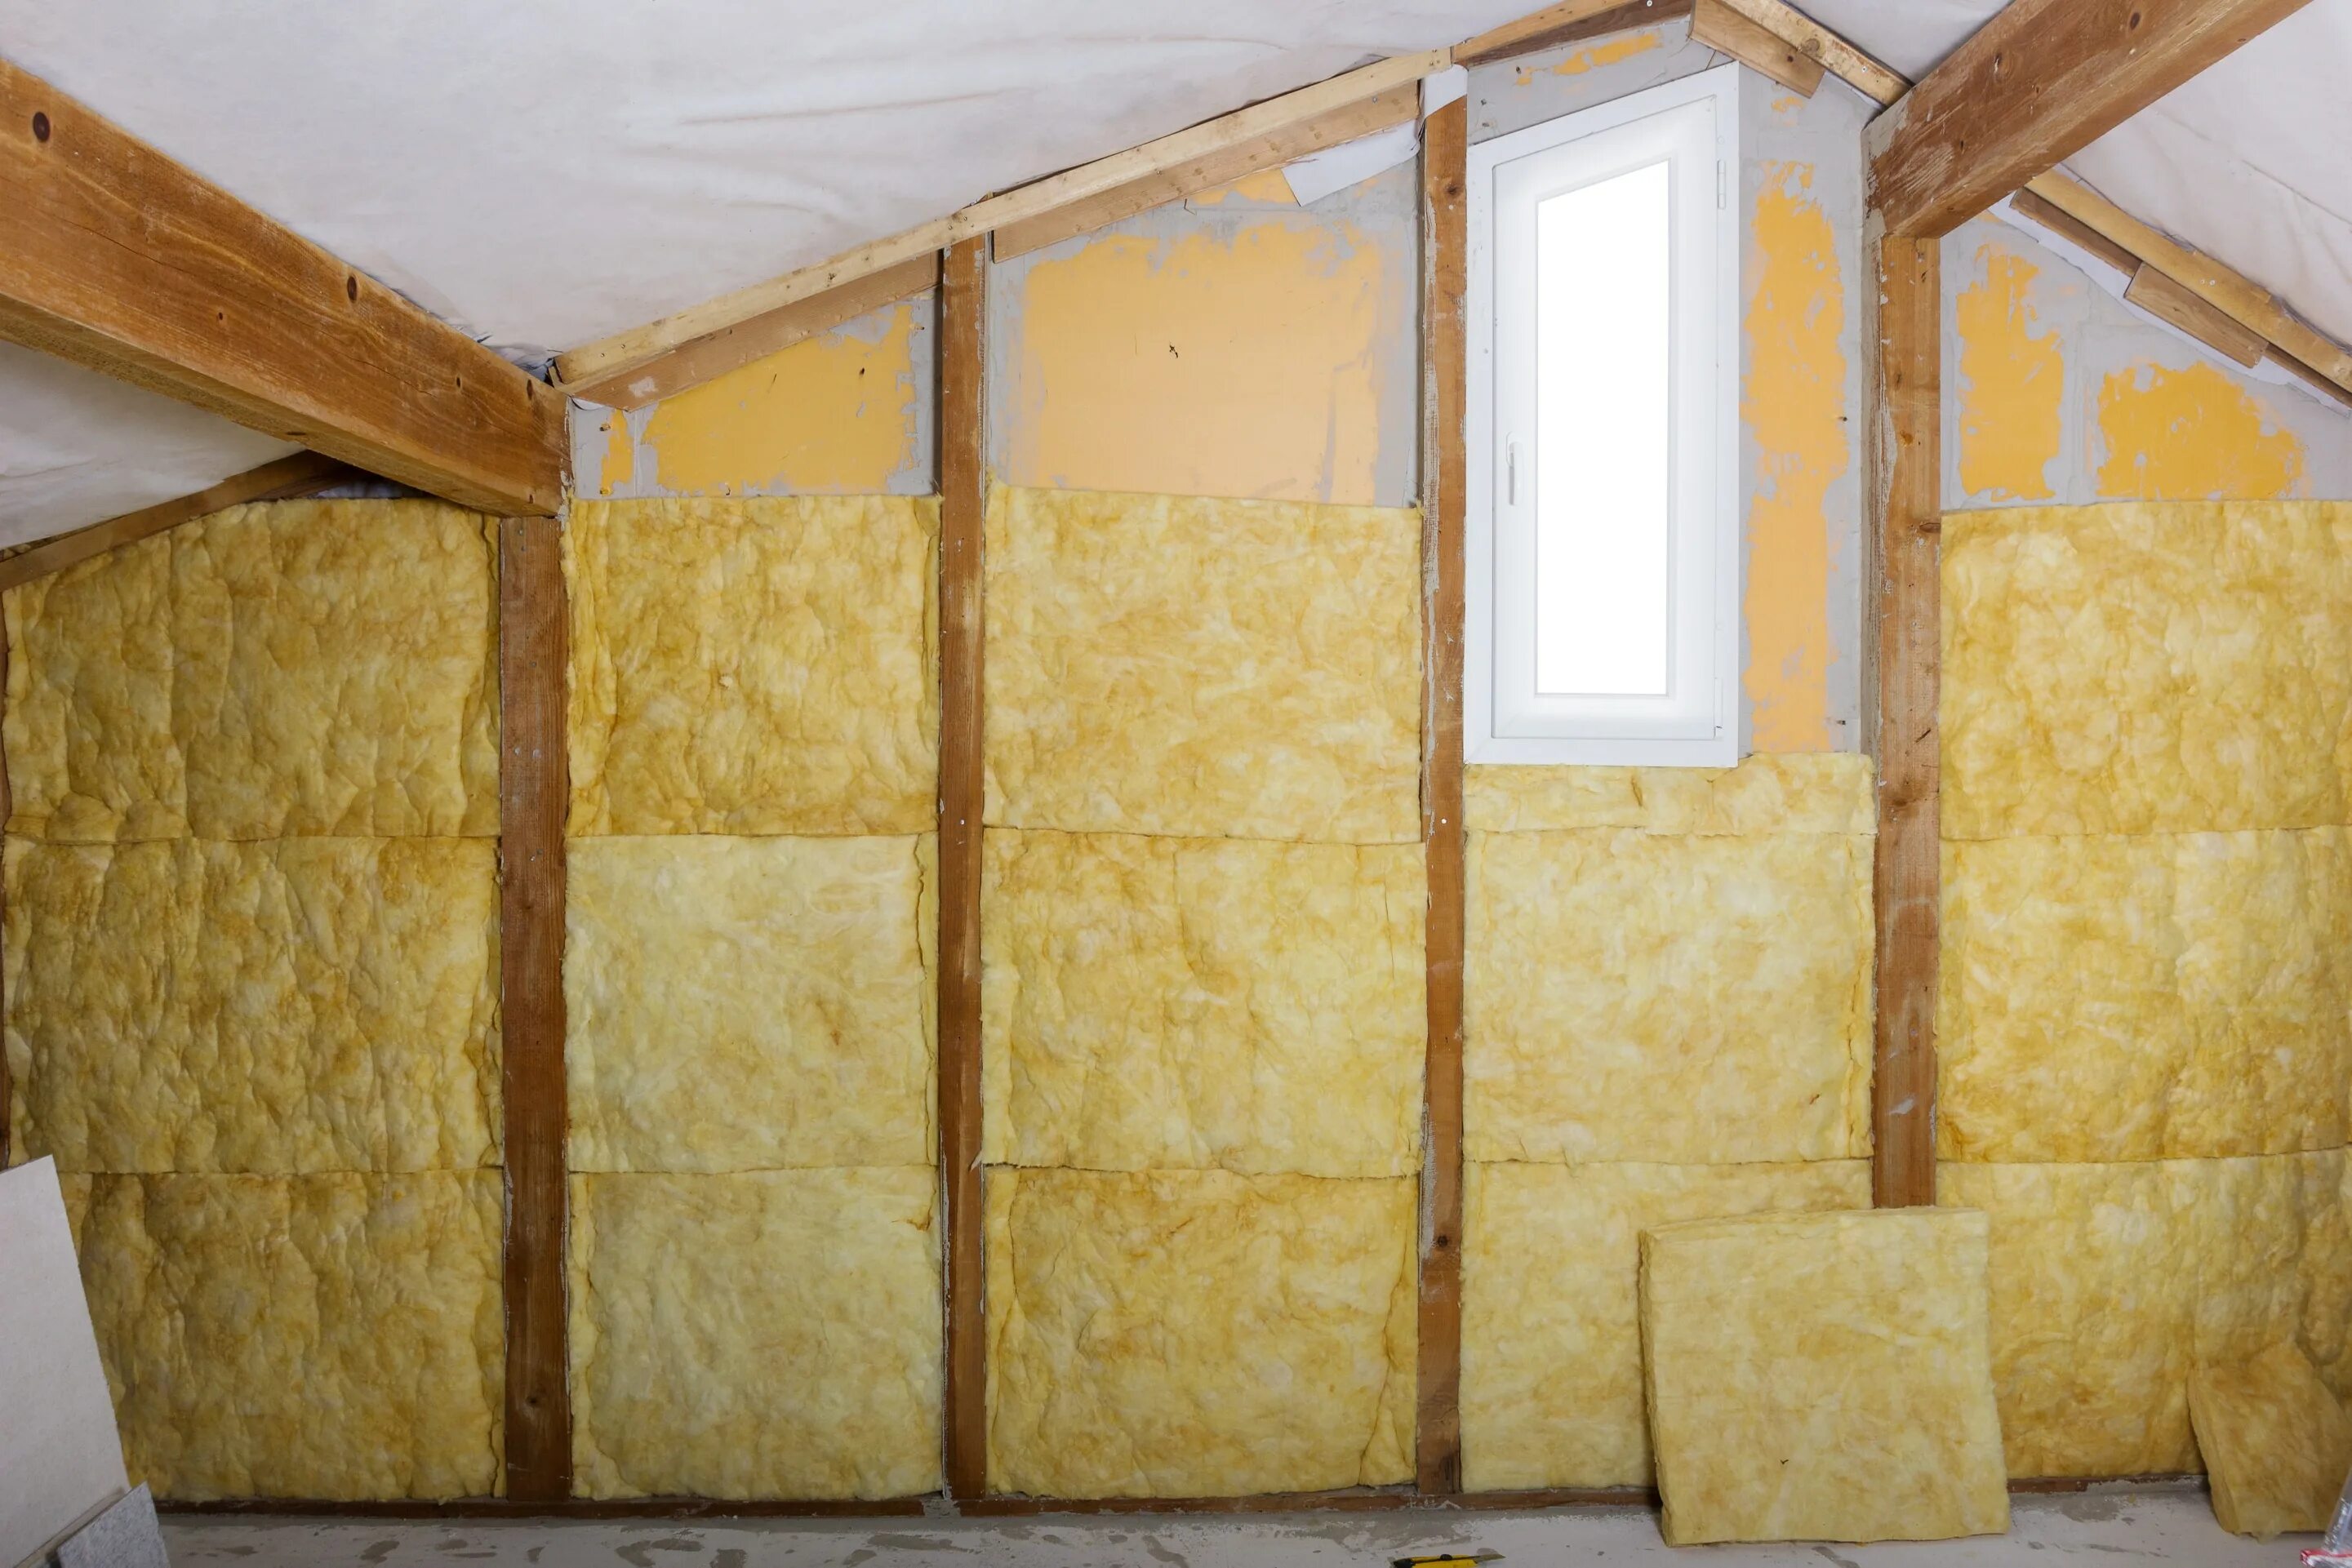 Термоизоляция для стен. Теплоизоляция внутренних стен. Внутренних стен утеплитель изоляция. Теплоизоляционный материал для стен в квартире.